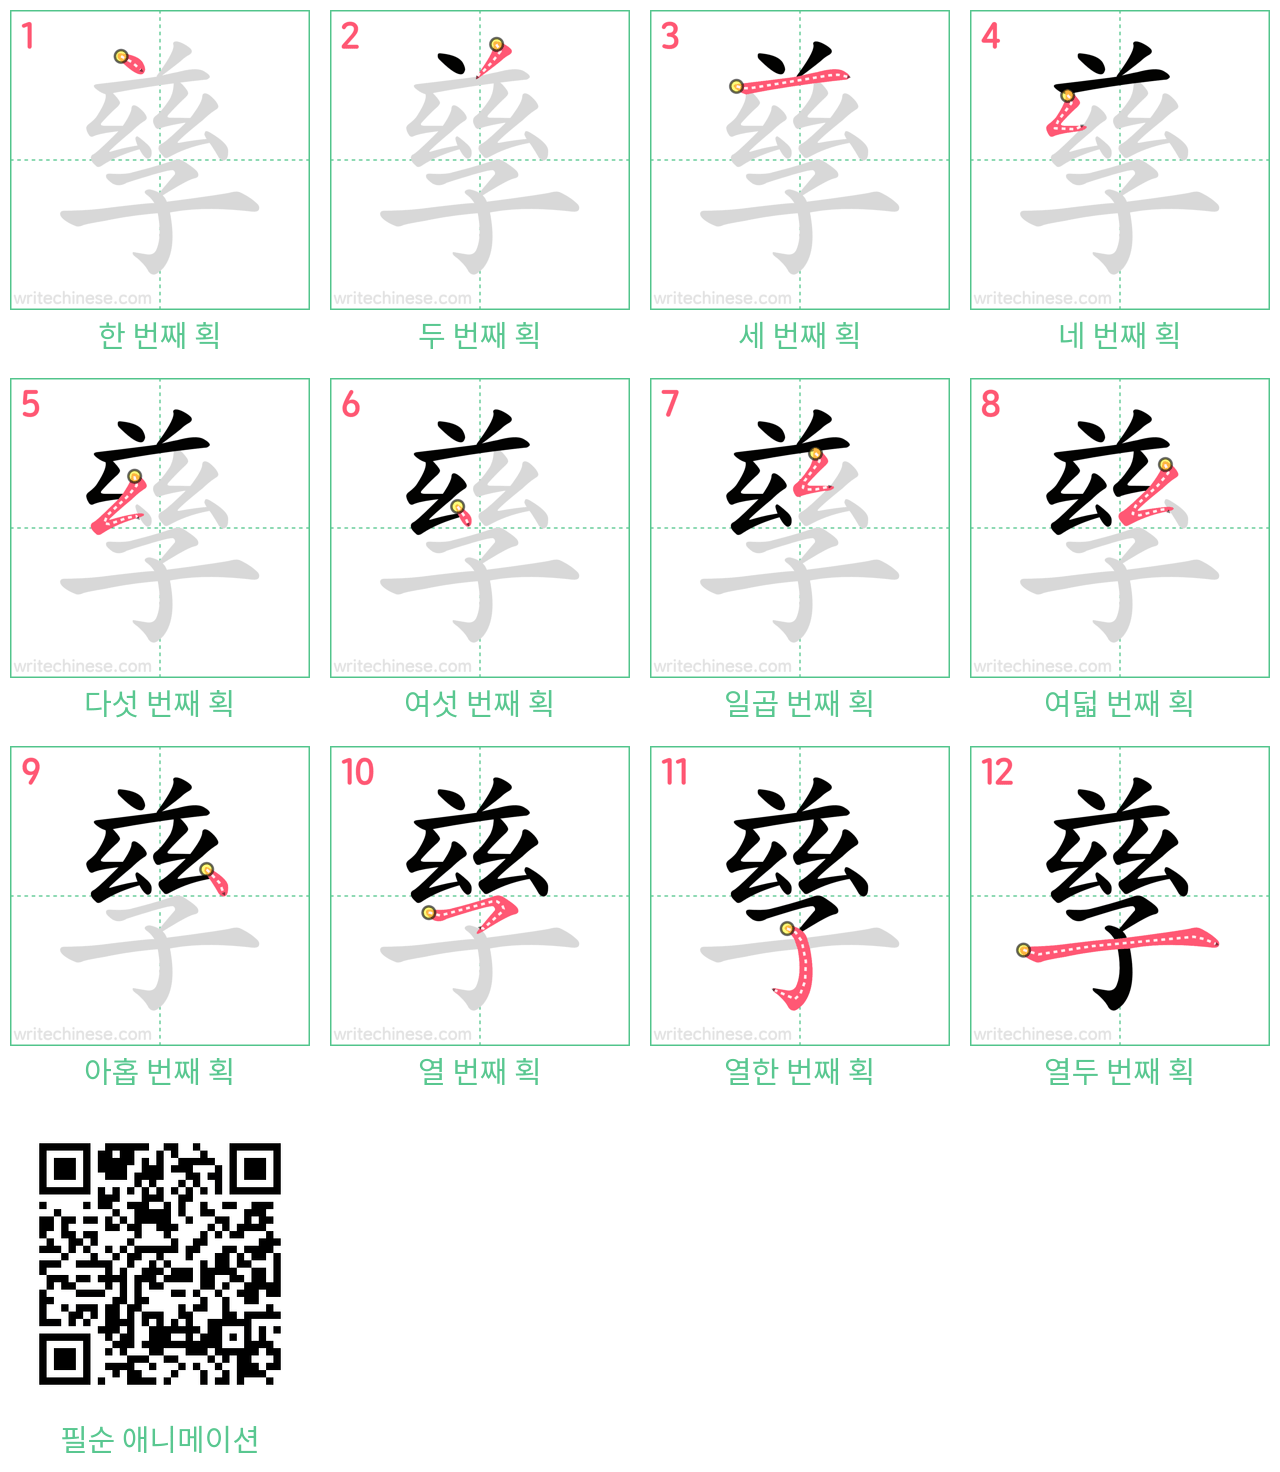 孳 step-by-step stroke order diagrams